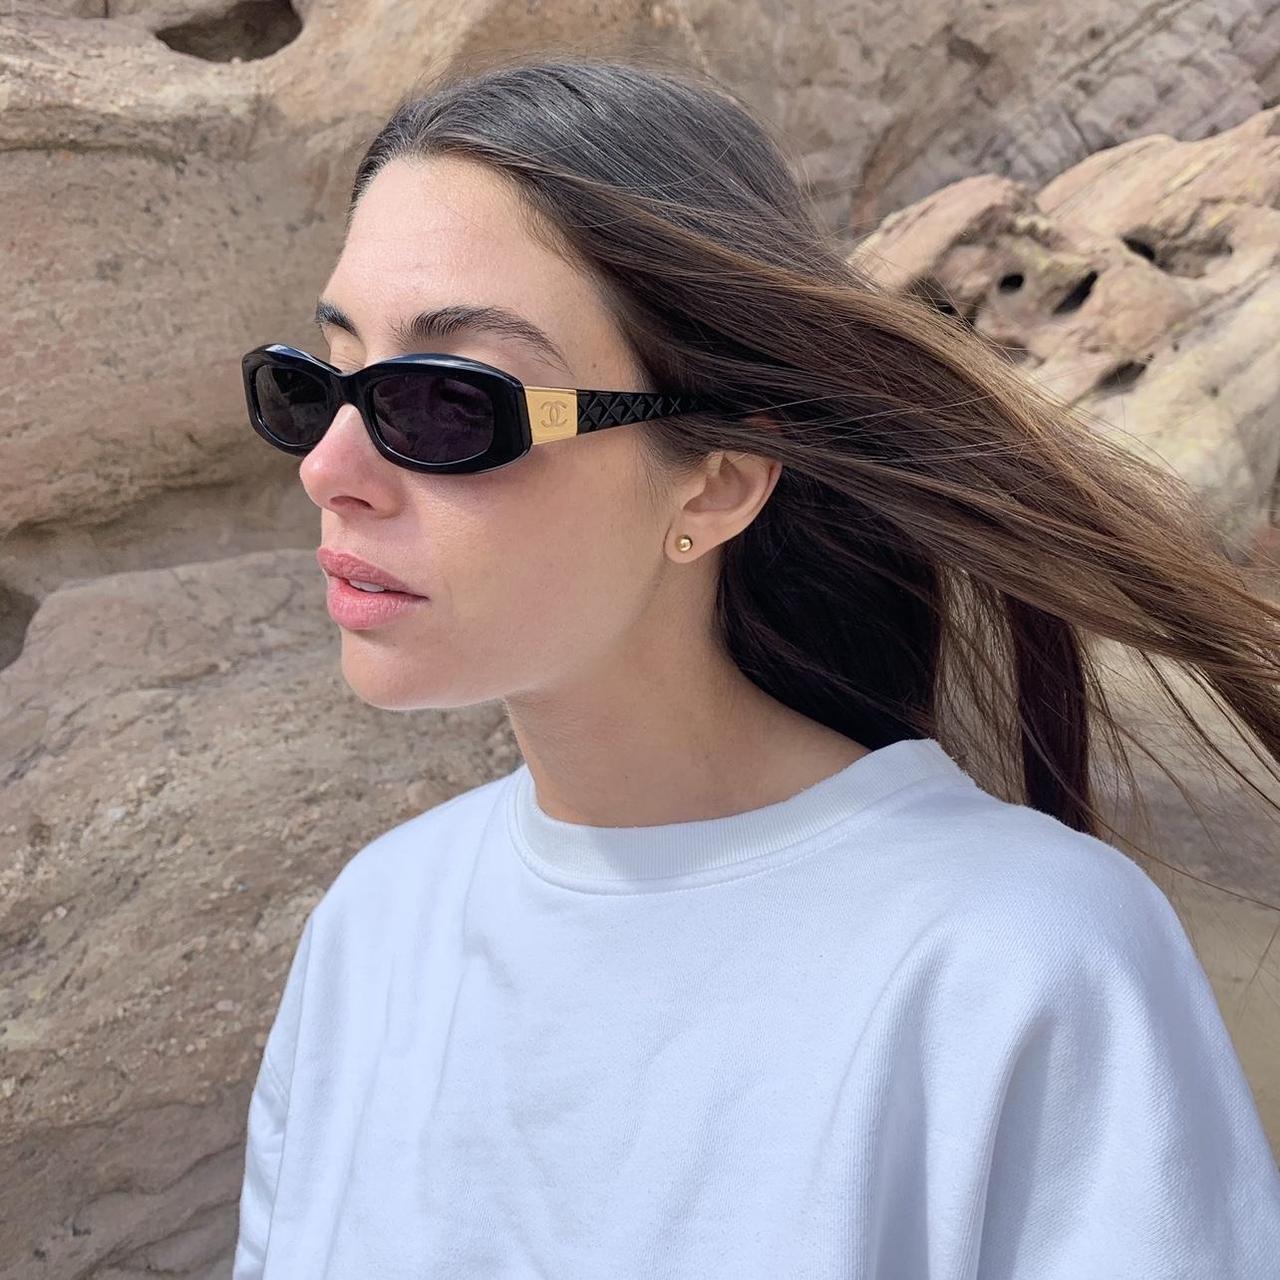 Chanel Women's Sunglasses - Silver